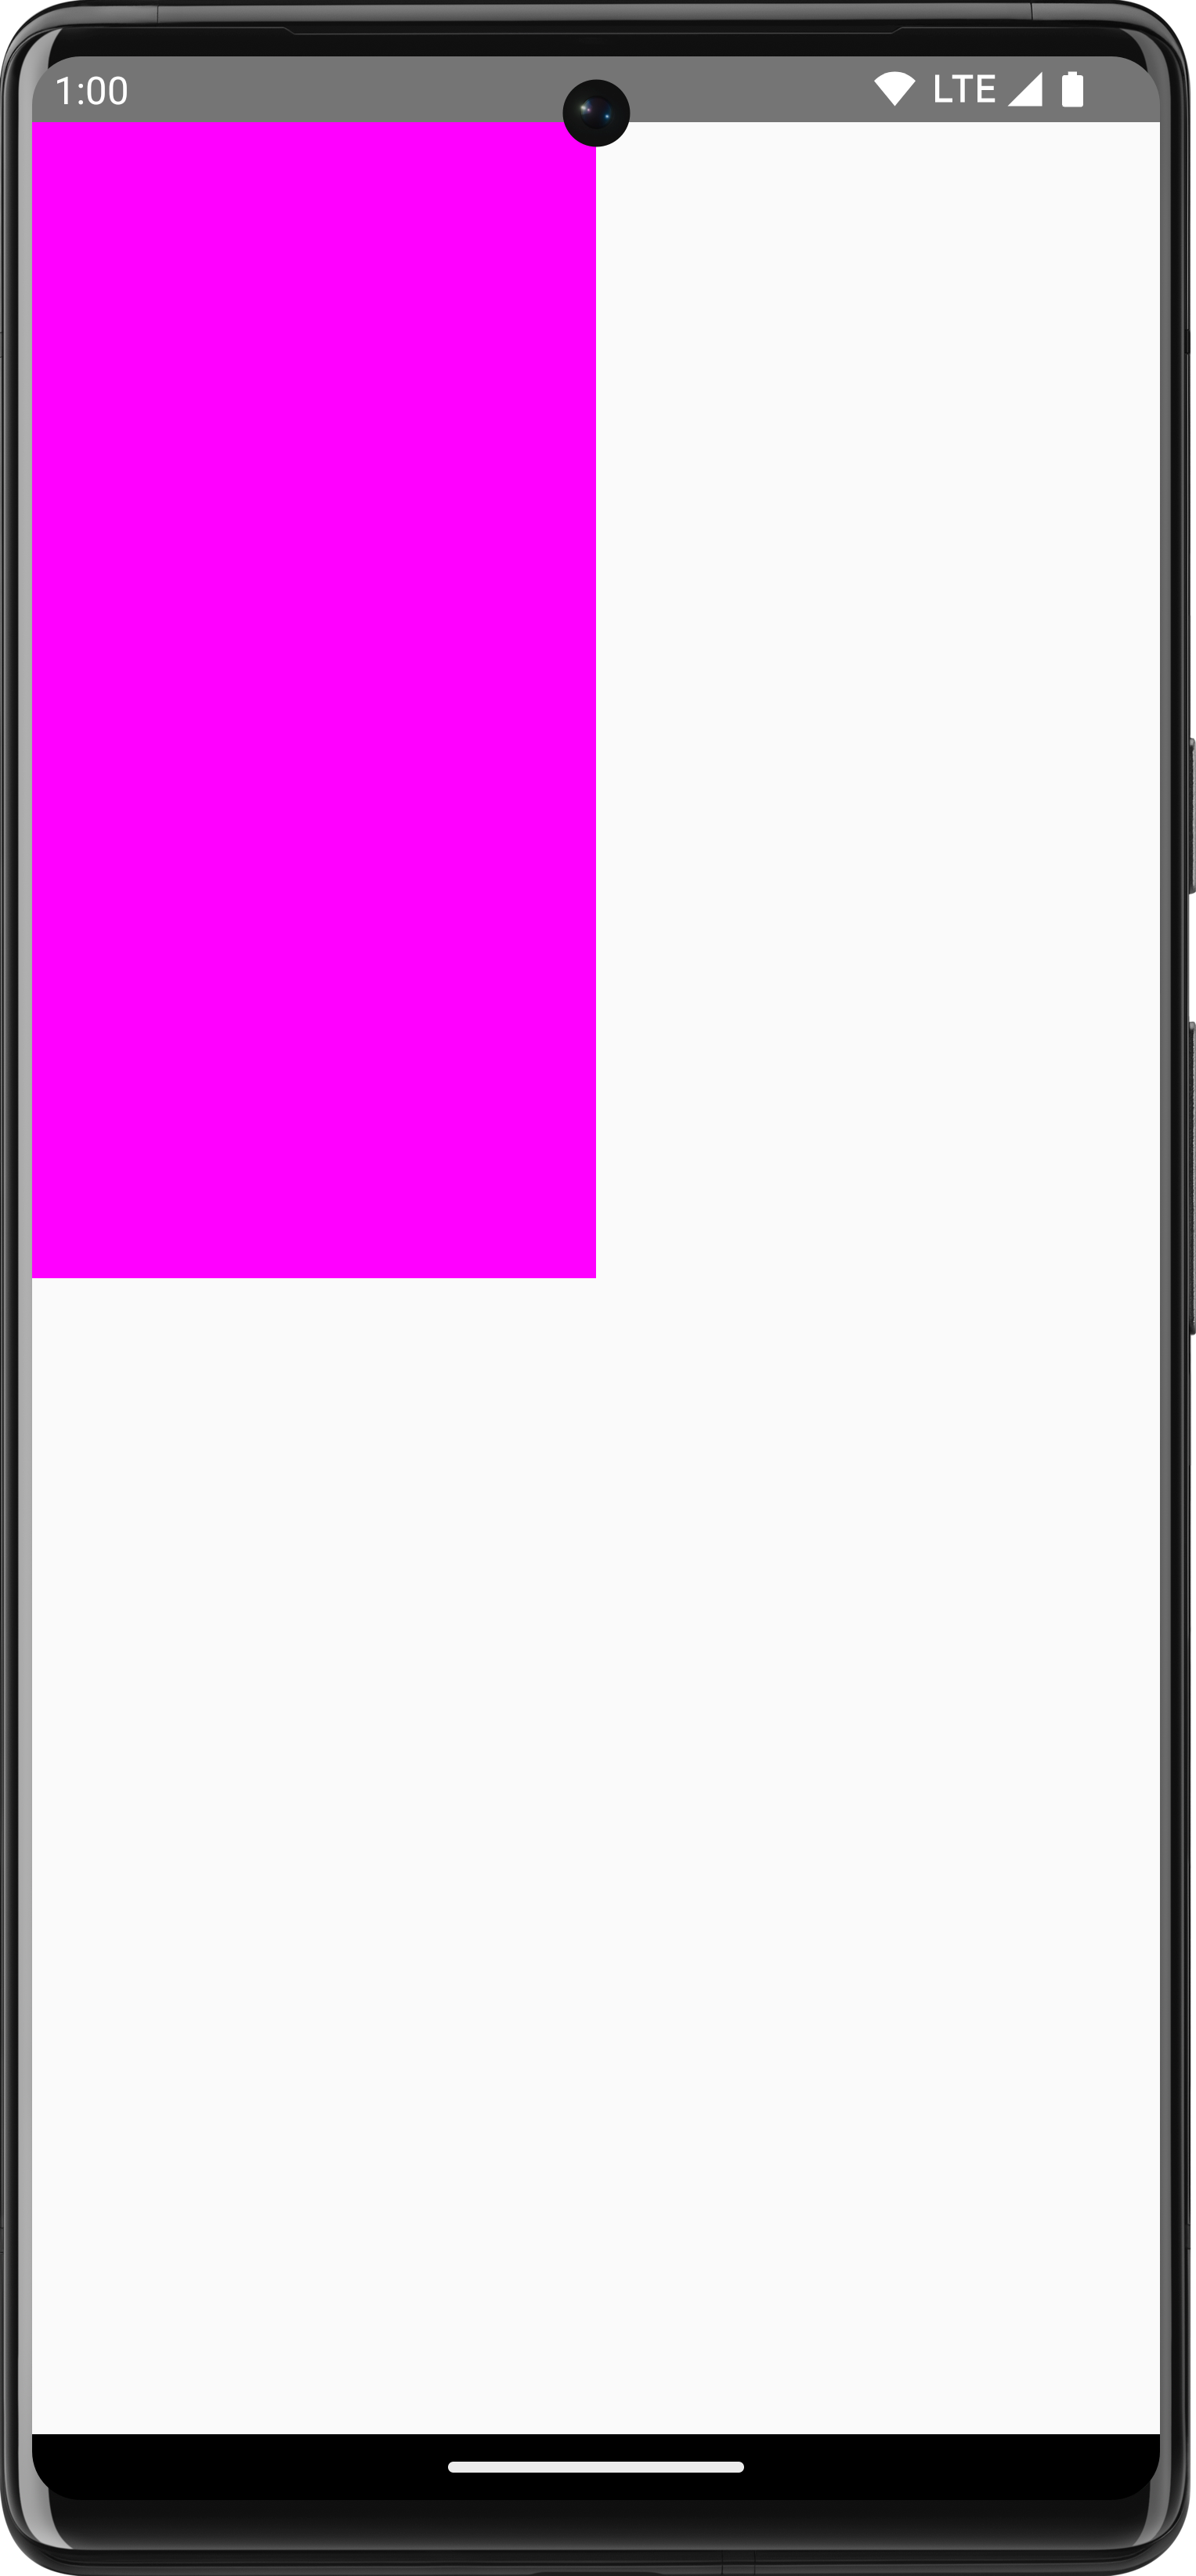 흰색 배경에 그려진 화면의 4분의 1을 차지하는 분홍색 직사각형